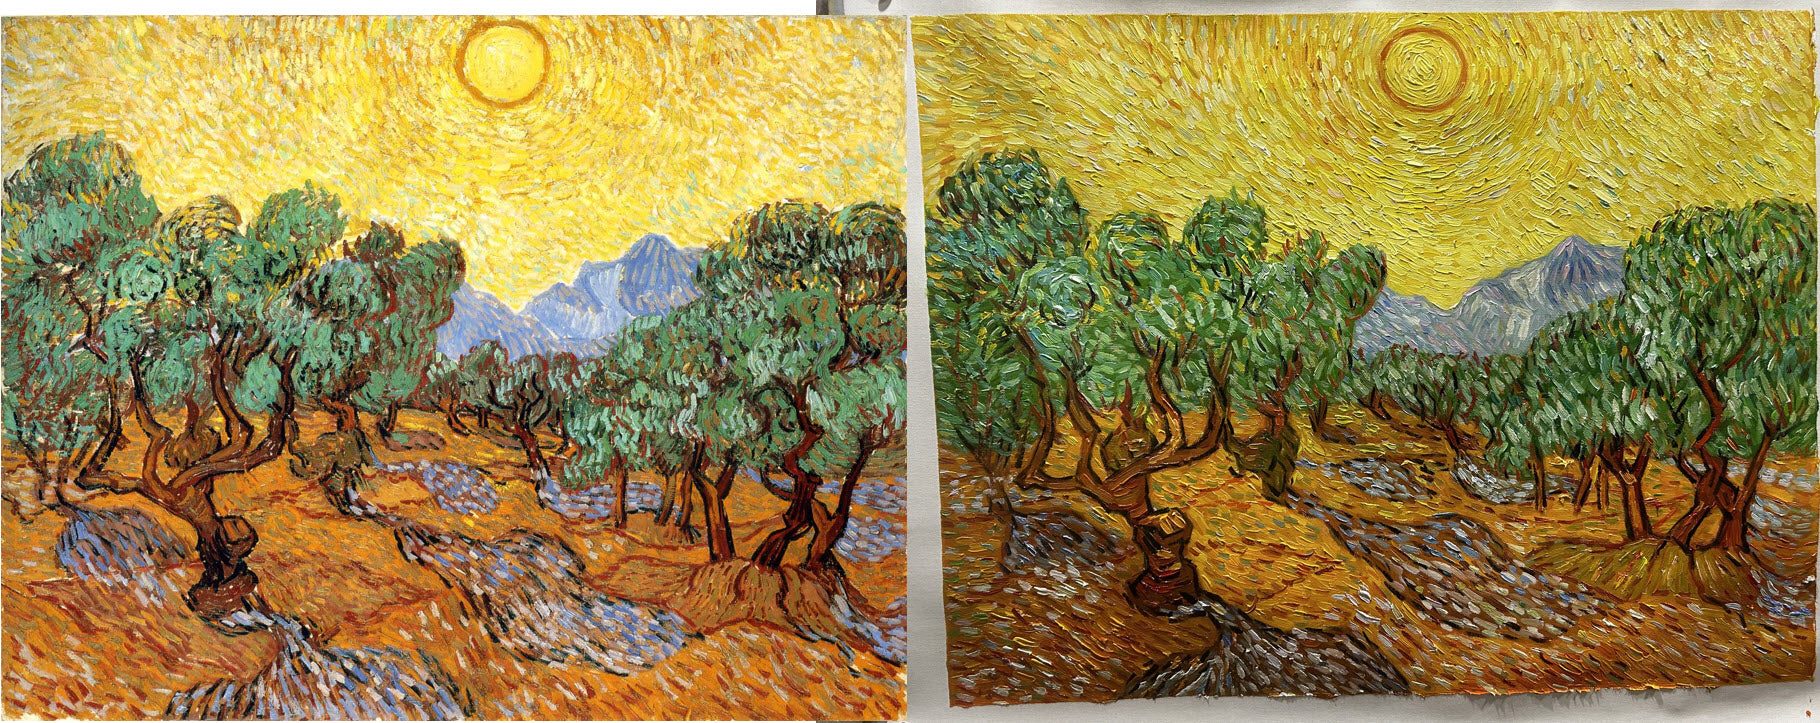 Oliveiras com céu e sol amarelos - Van Gogh